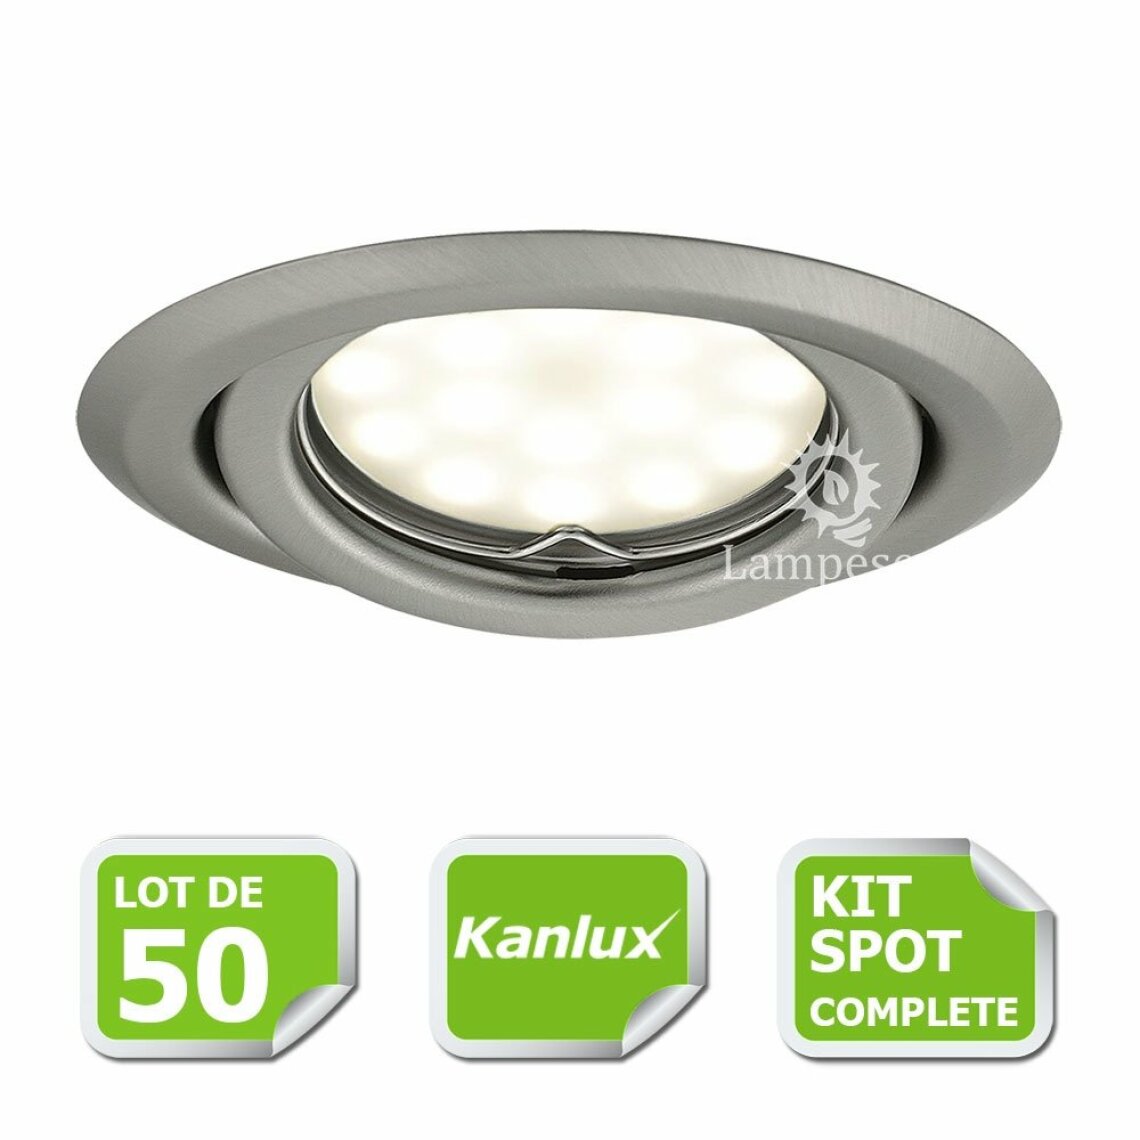 Kanlux - Kit complete de 50 Spots encastrable chrome mat orientable marque Kanlux avec GU10 LED 5W blanc froid 6000K - Boîtes d'encastrement